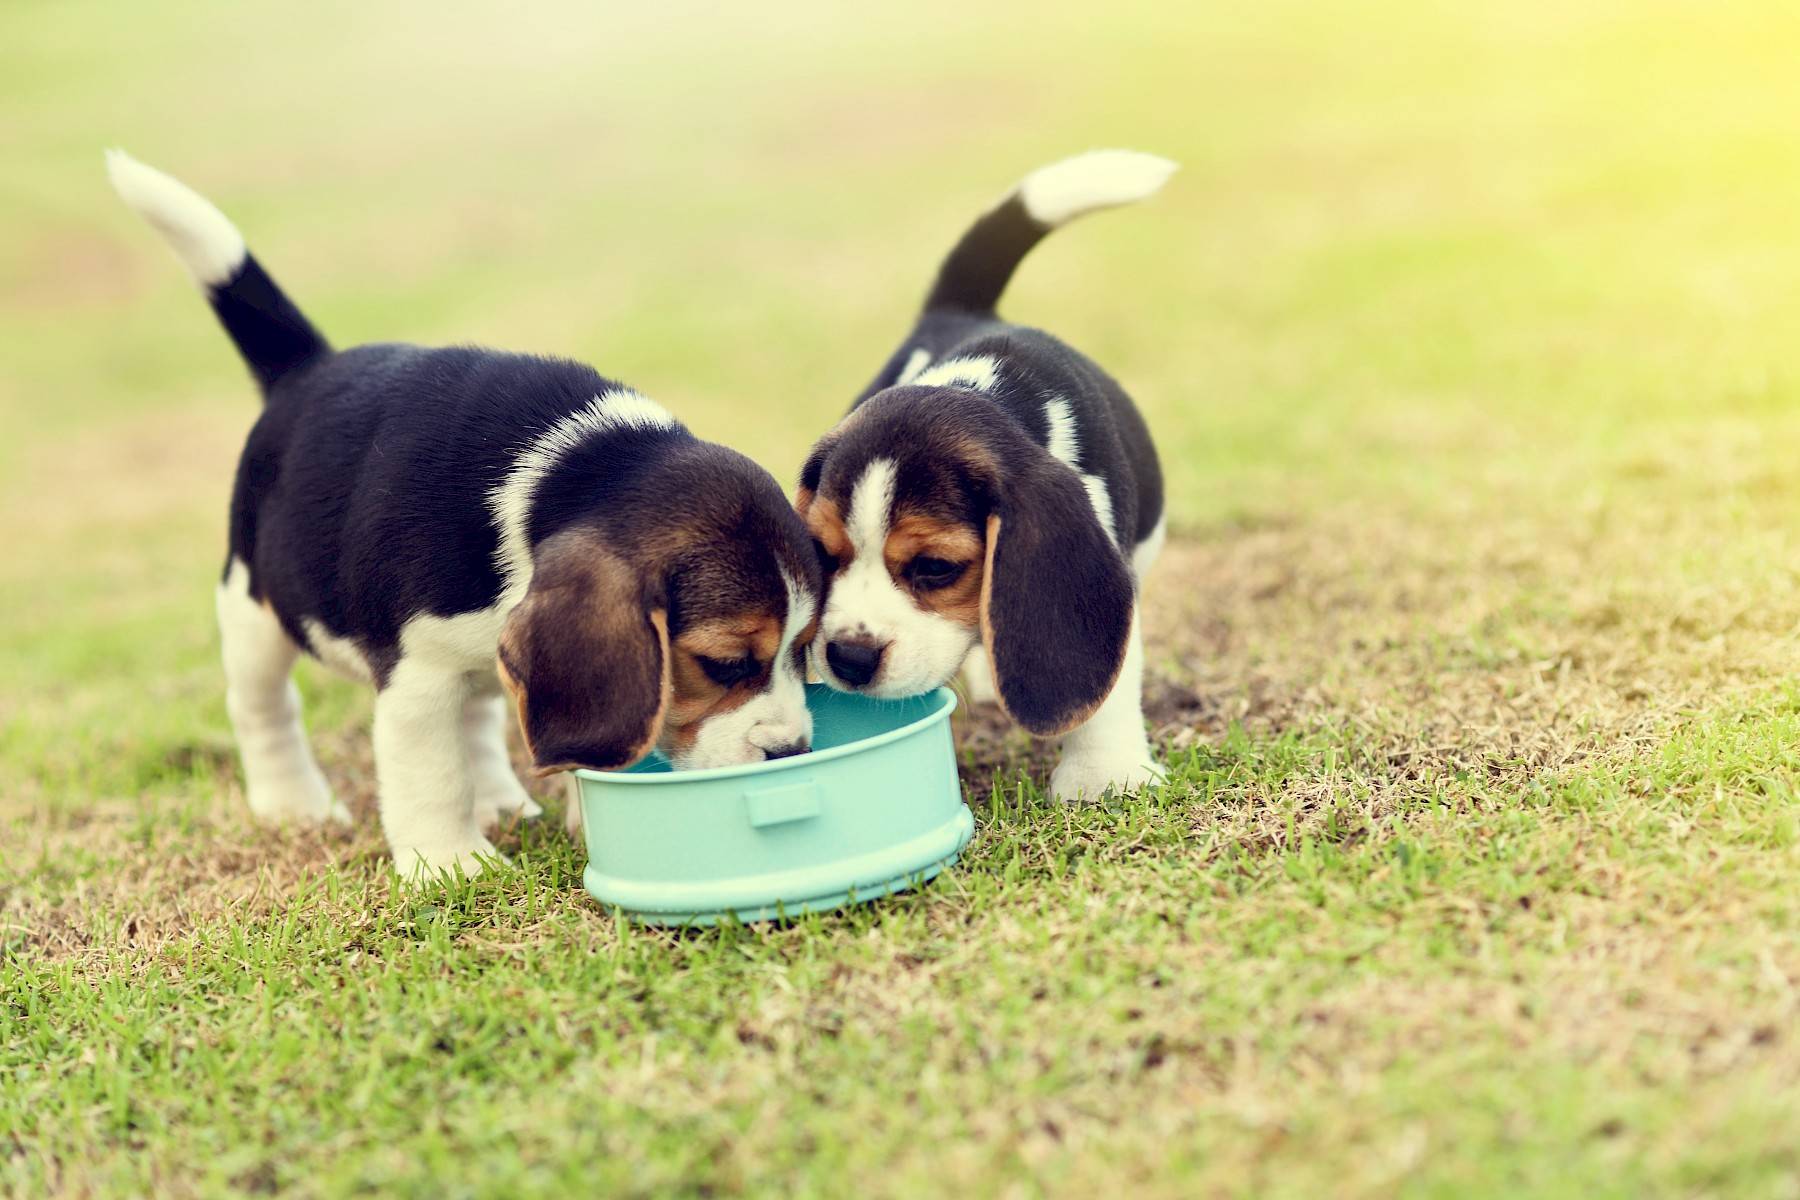 twee puppy's eten samen uit een voederbakje